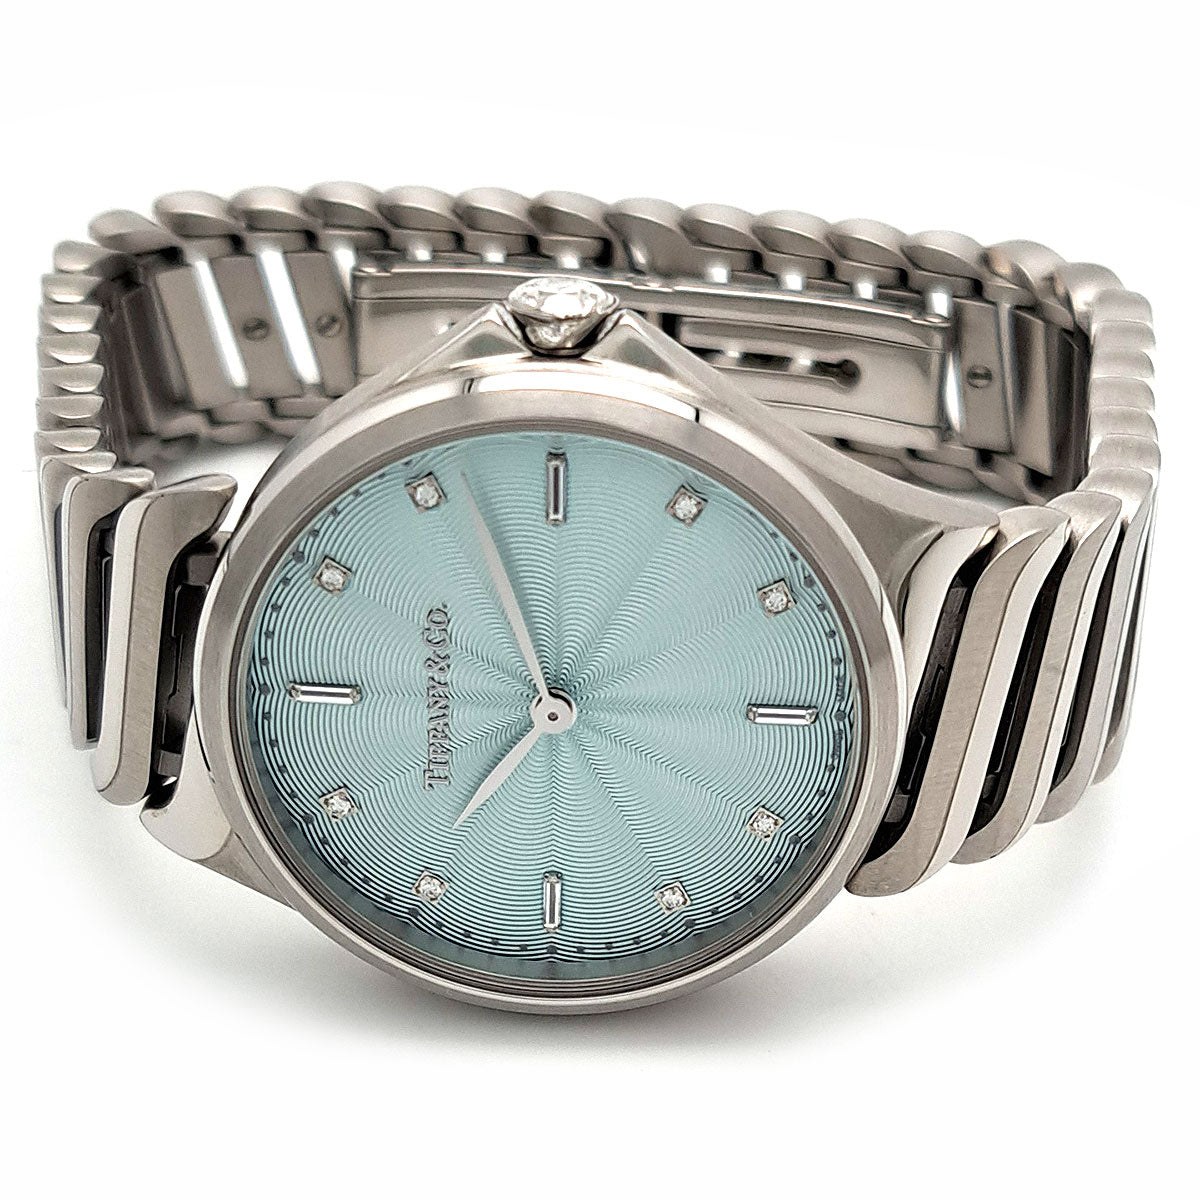 Quartz Metro Wrist Watch   6.0874816E7